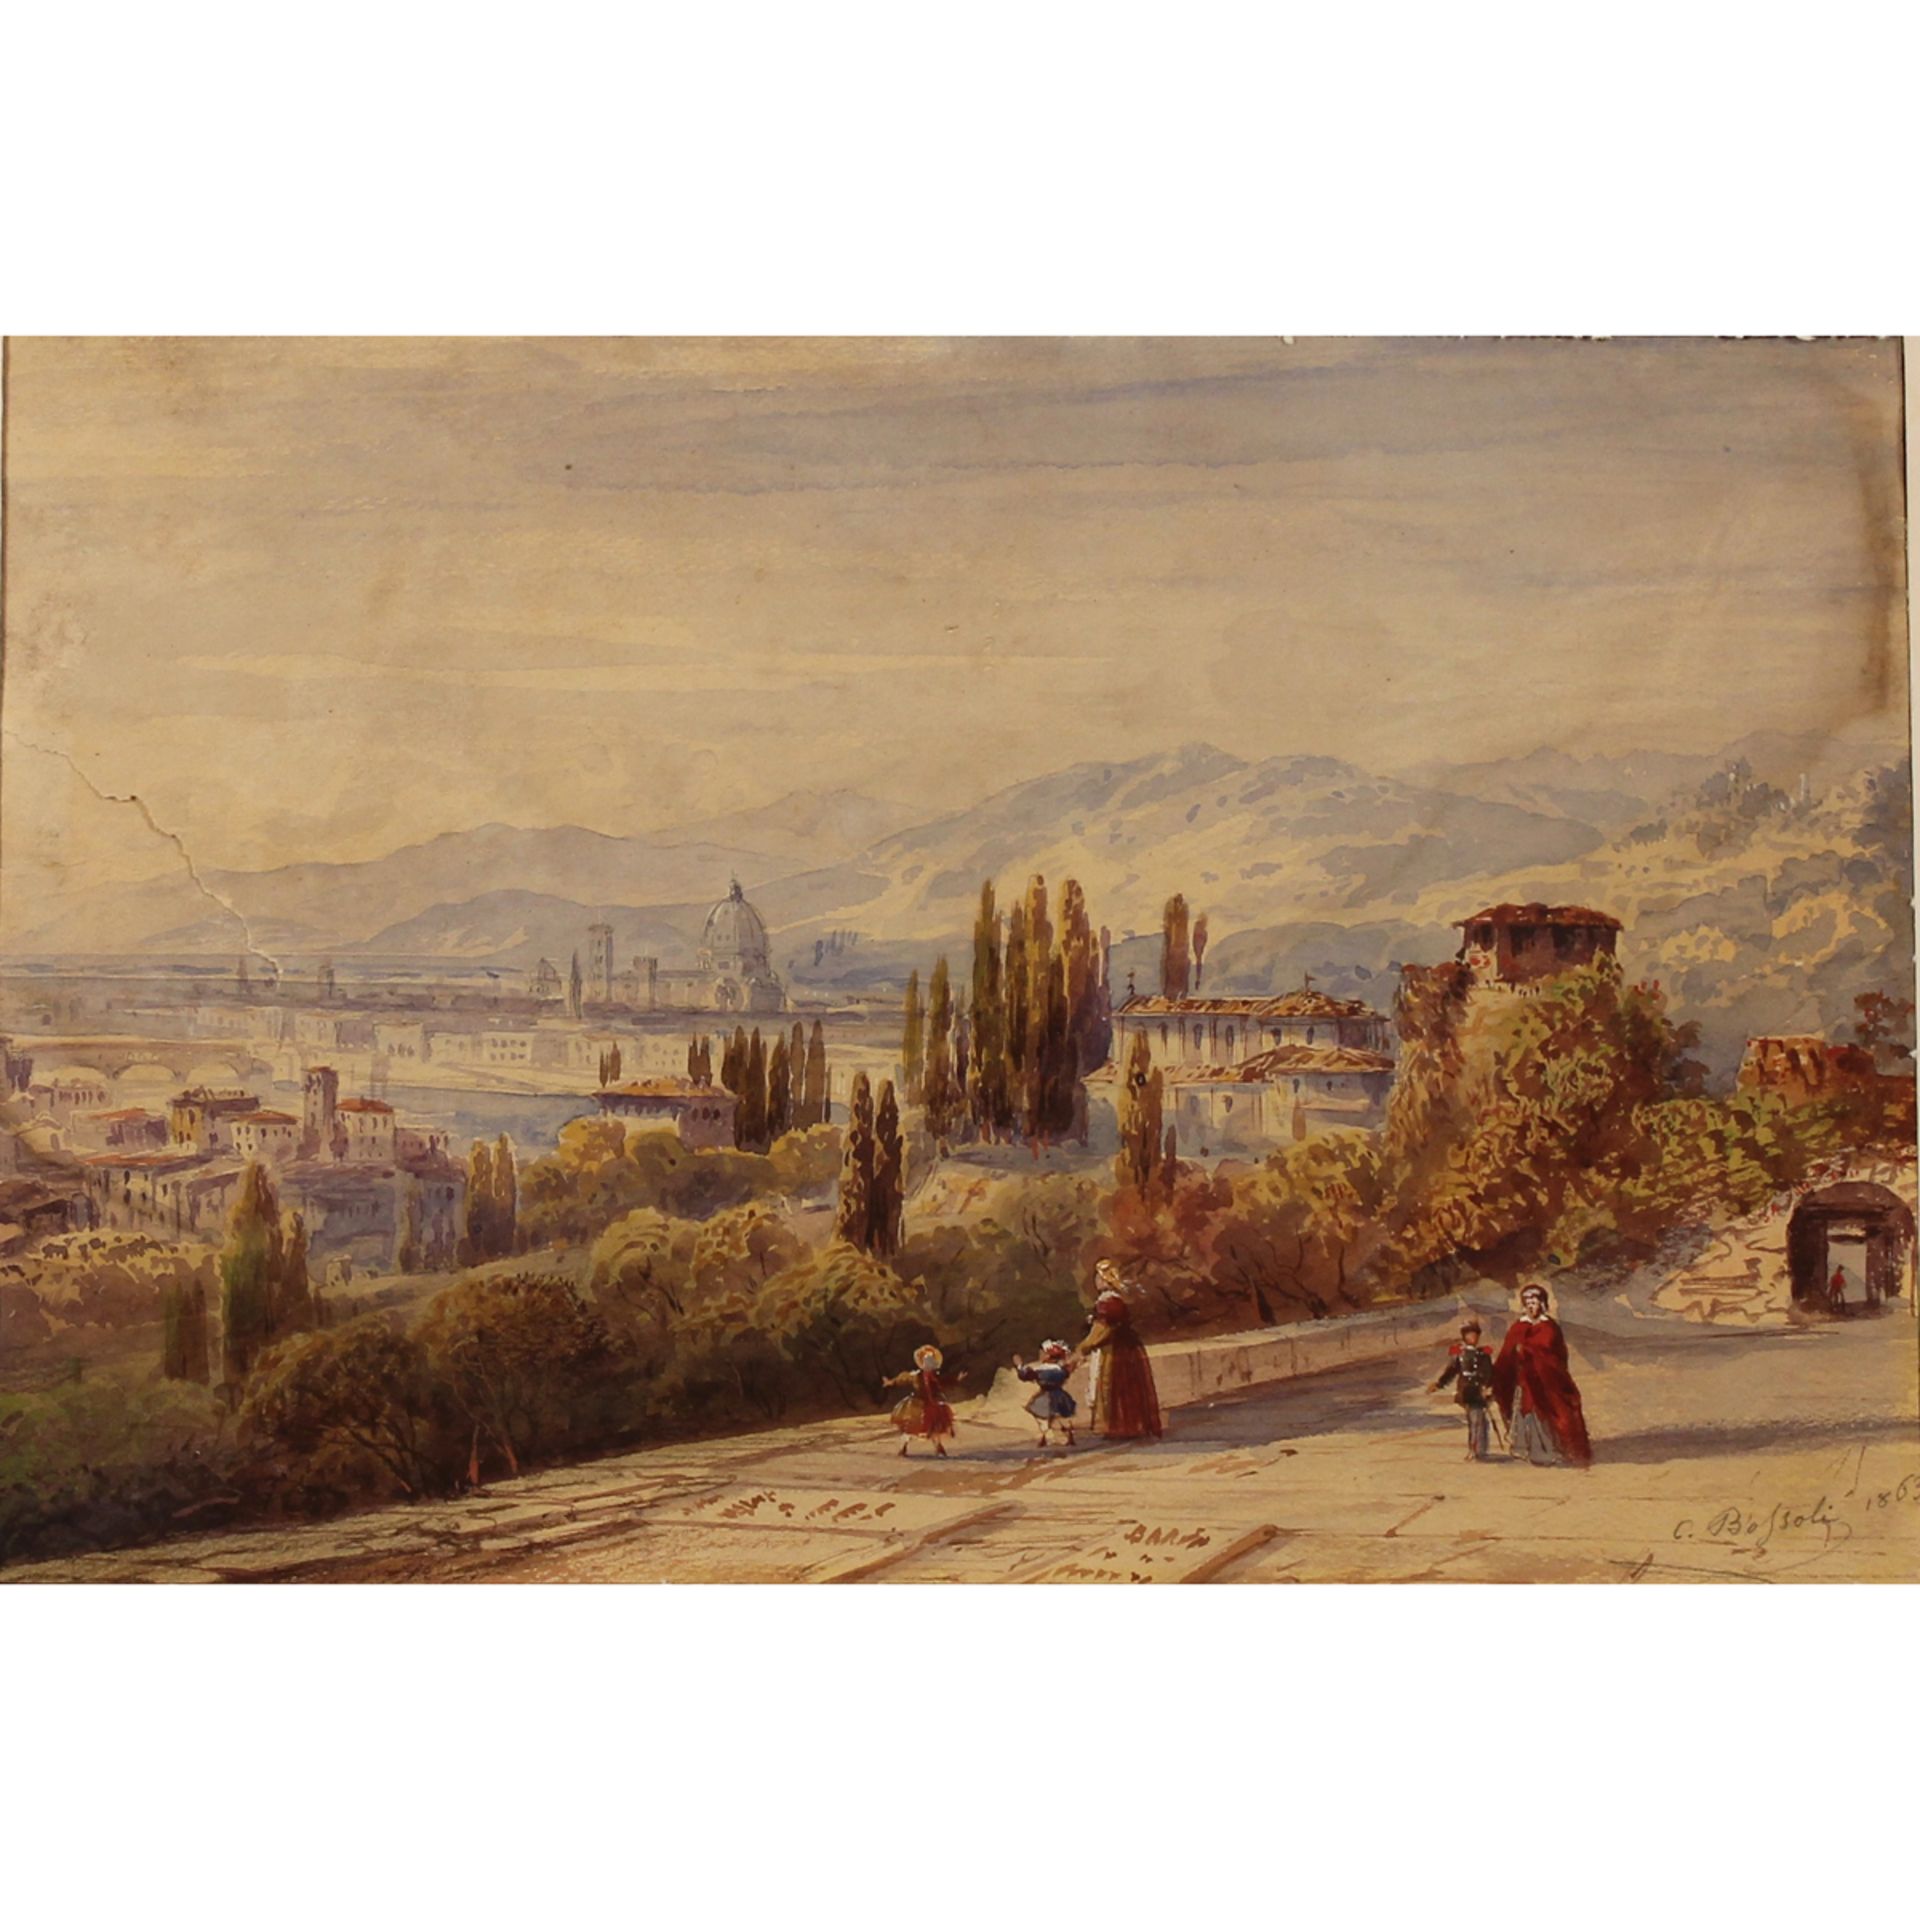 Carlo Bossoli (1815/1884) "Scorcio di città con figure" - "View of the city with figures"